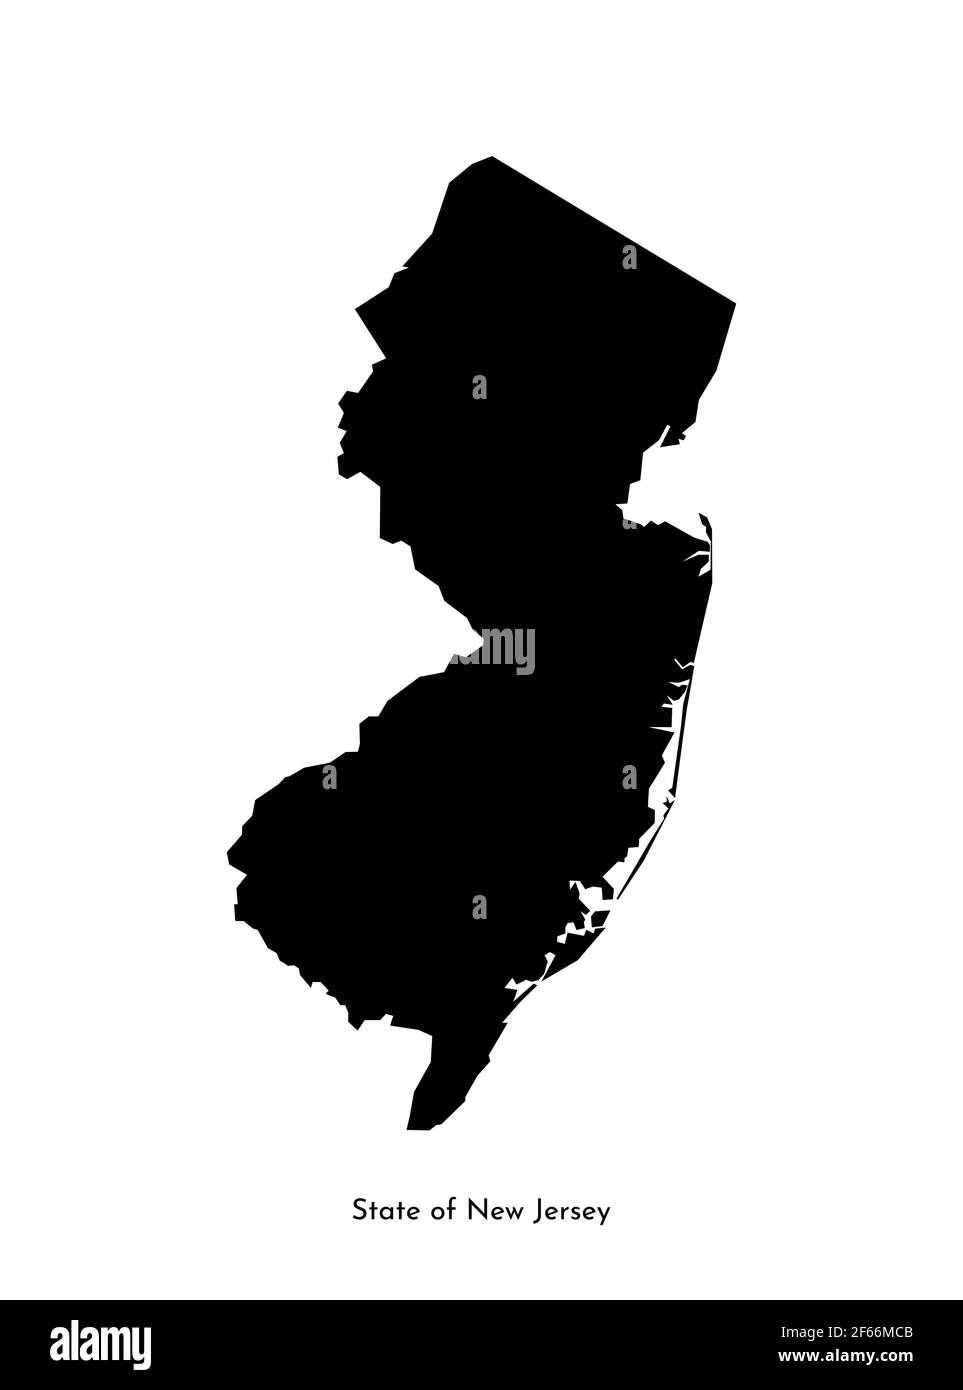 Vektor isoliert vereinfachte Illustration Symbol mit schwarzer Karte Silhouette des Staates New Jersey (USA). Weißer Hintergrund Stock Vektor